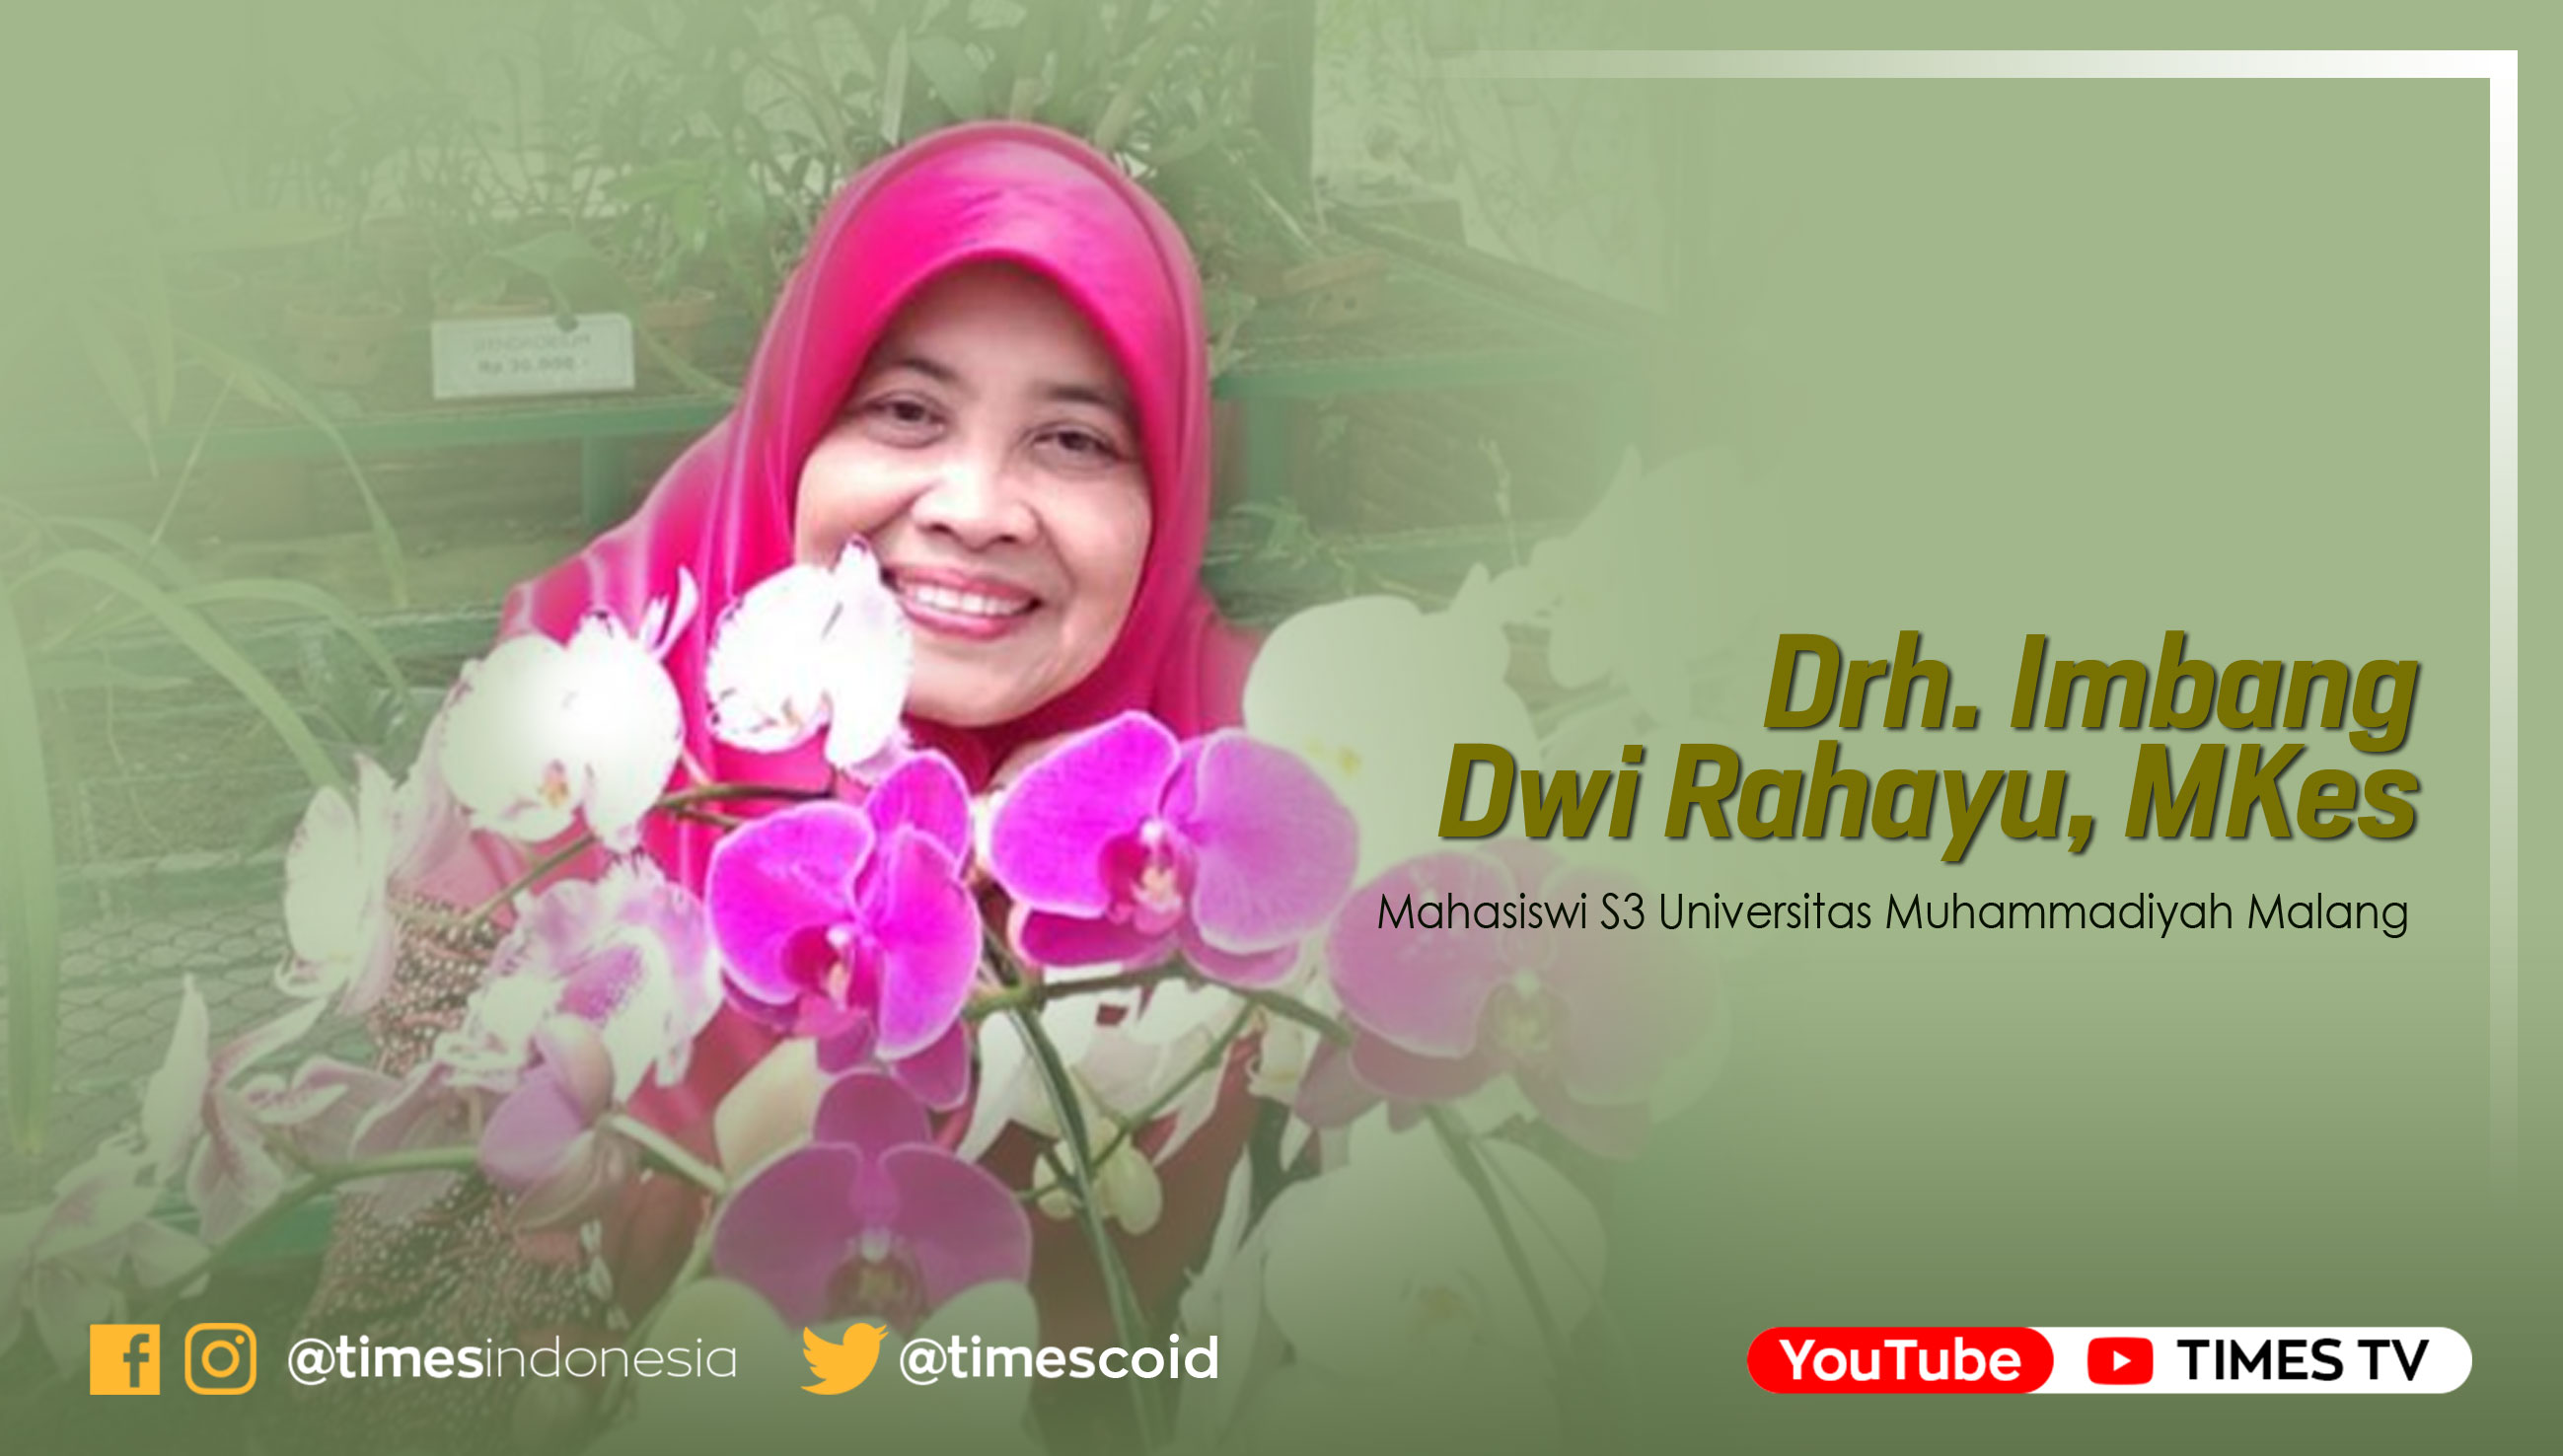 Drh. Imbang Dwi Rahayu, MKes, Mahasiswi S3 Universitas Muhammadiyah Malang.